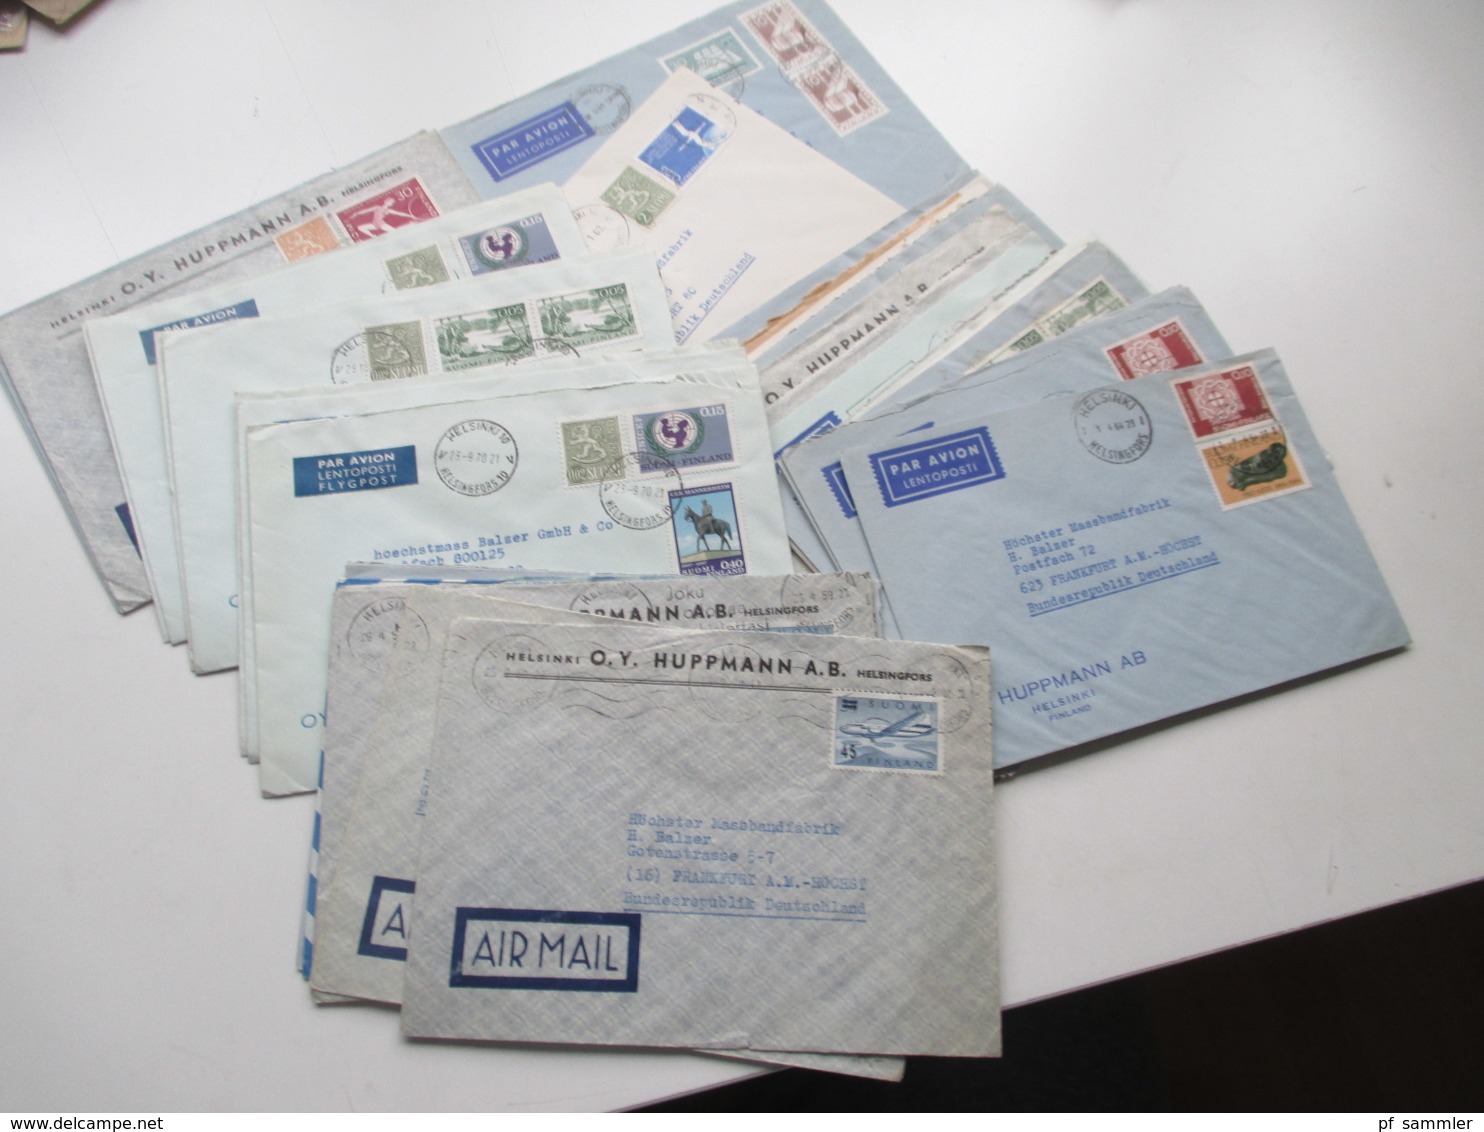 Finnland 1958 - 74 Luftpost Briefe 42 Stk. Firmen Korrespondenz Auch Freimarke Nr. 505 Flugzeug Mit Aufdruck Usw. - Storia Postale